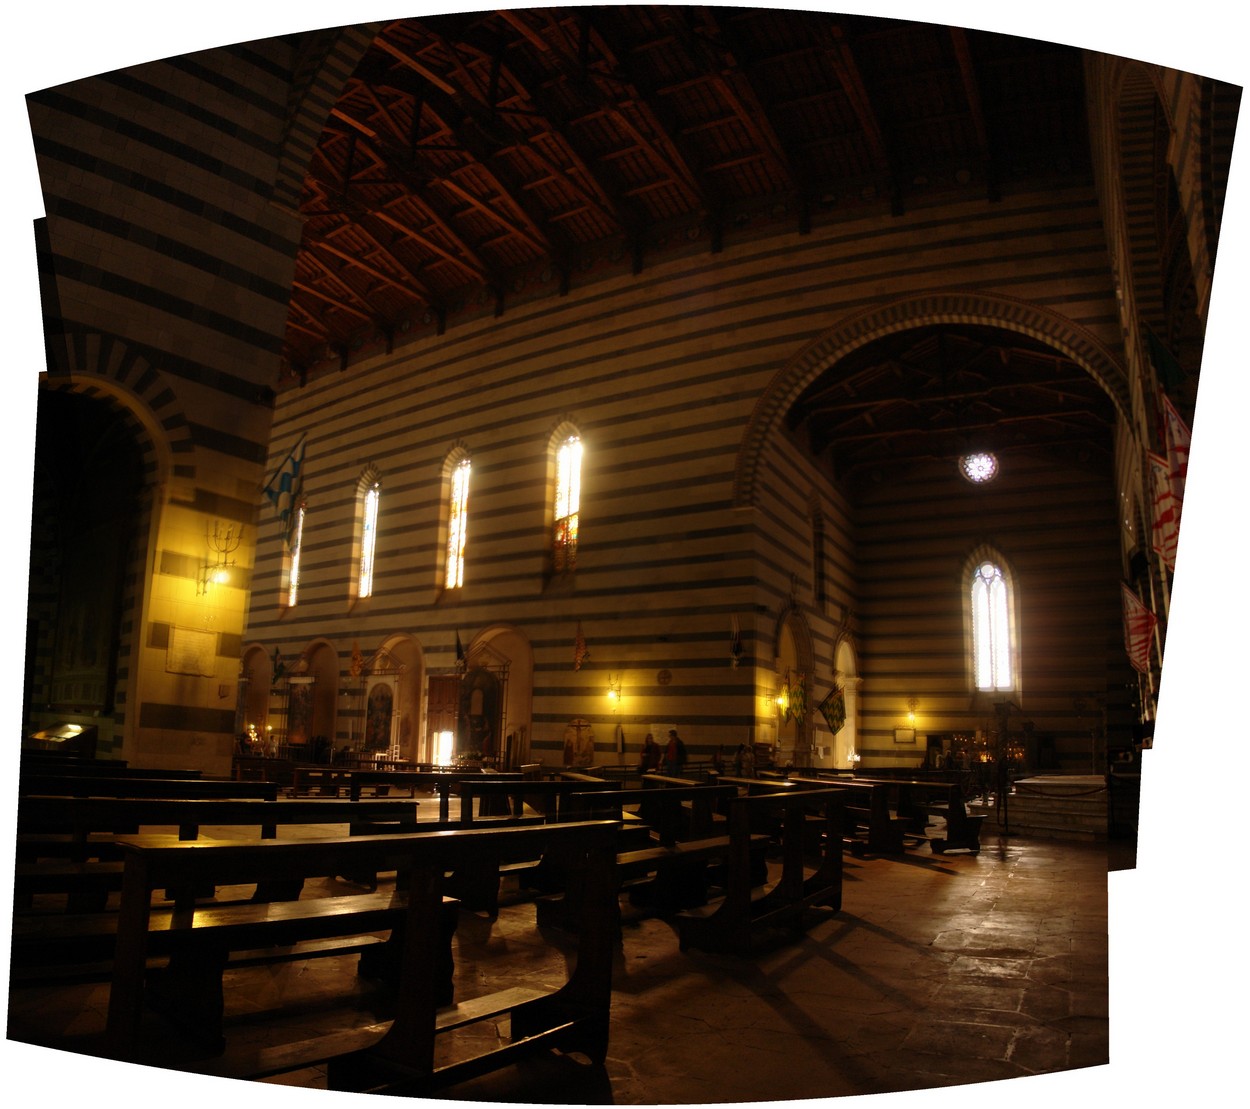 St. Florenz in Siena   